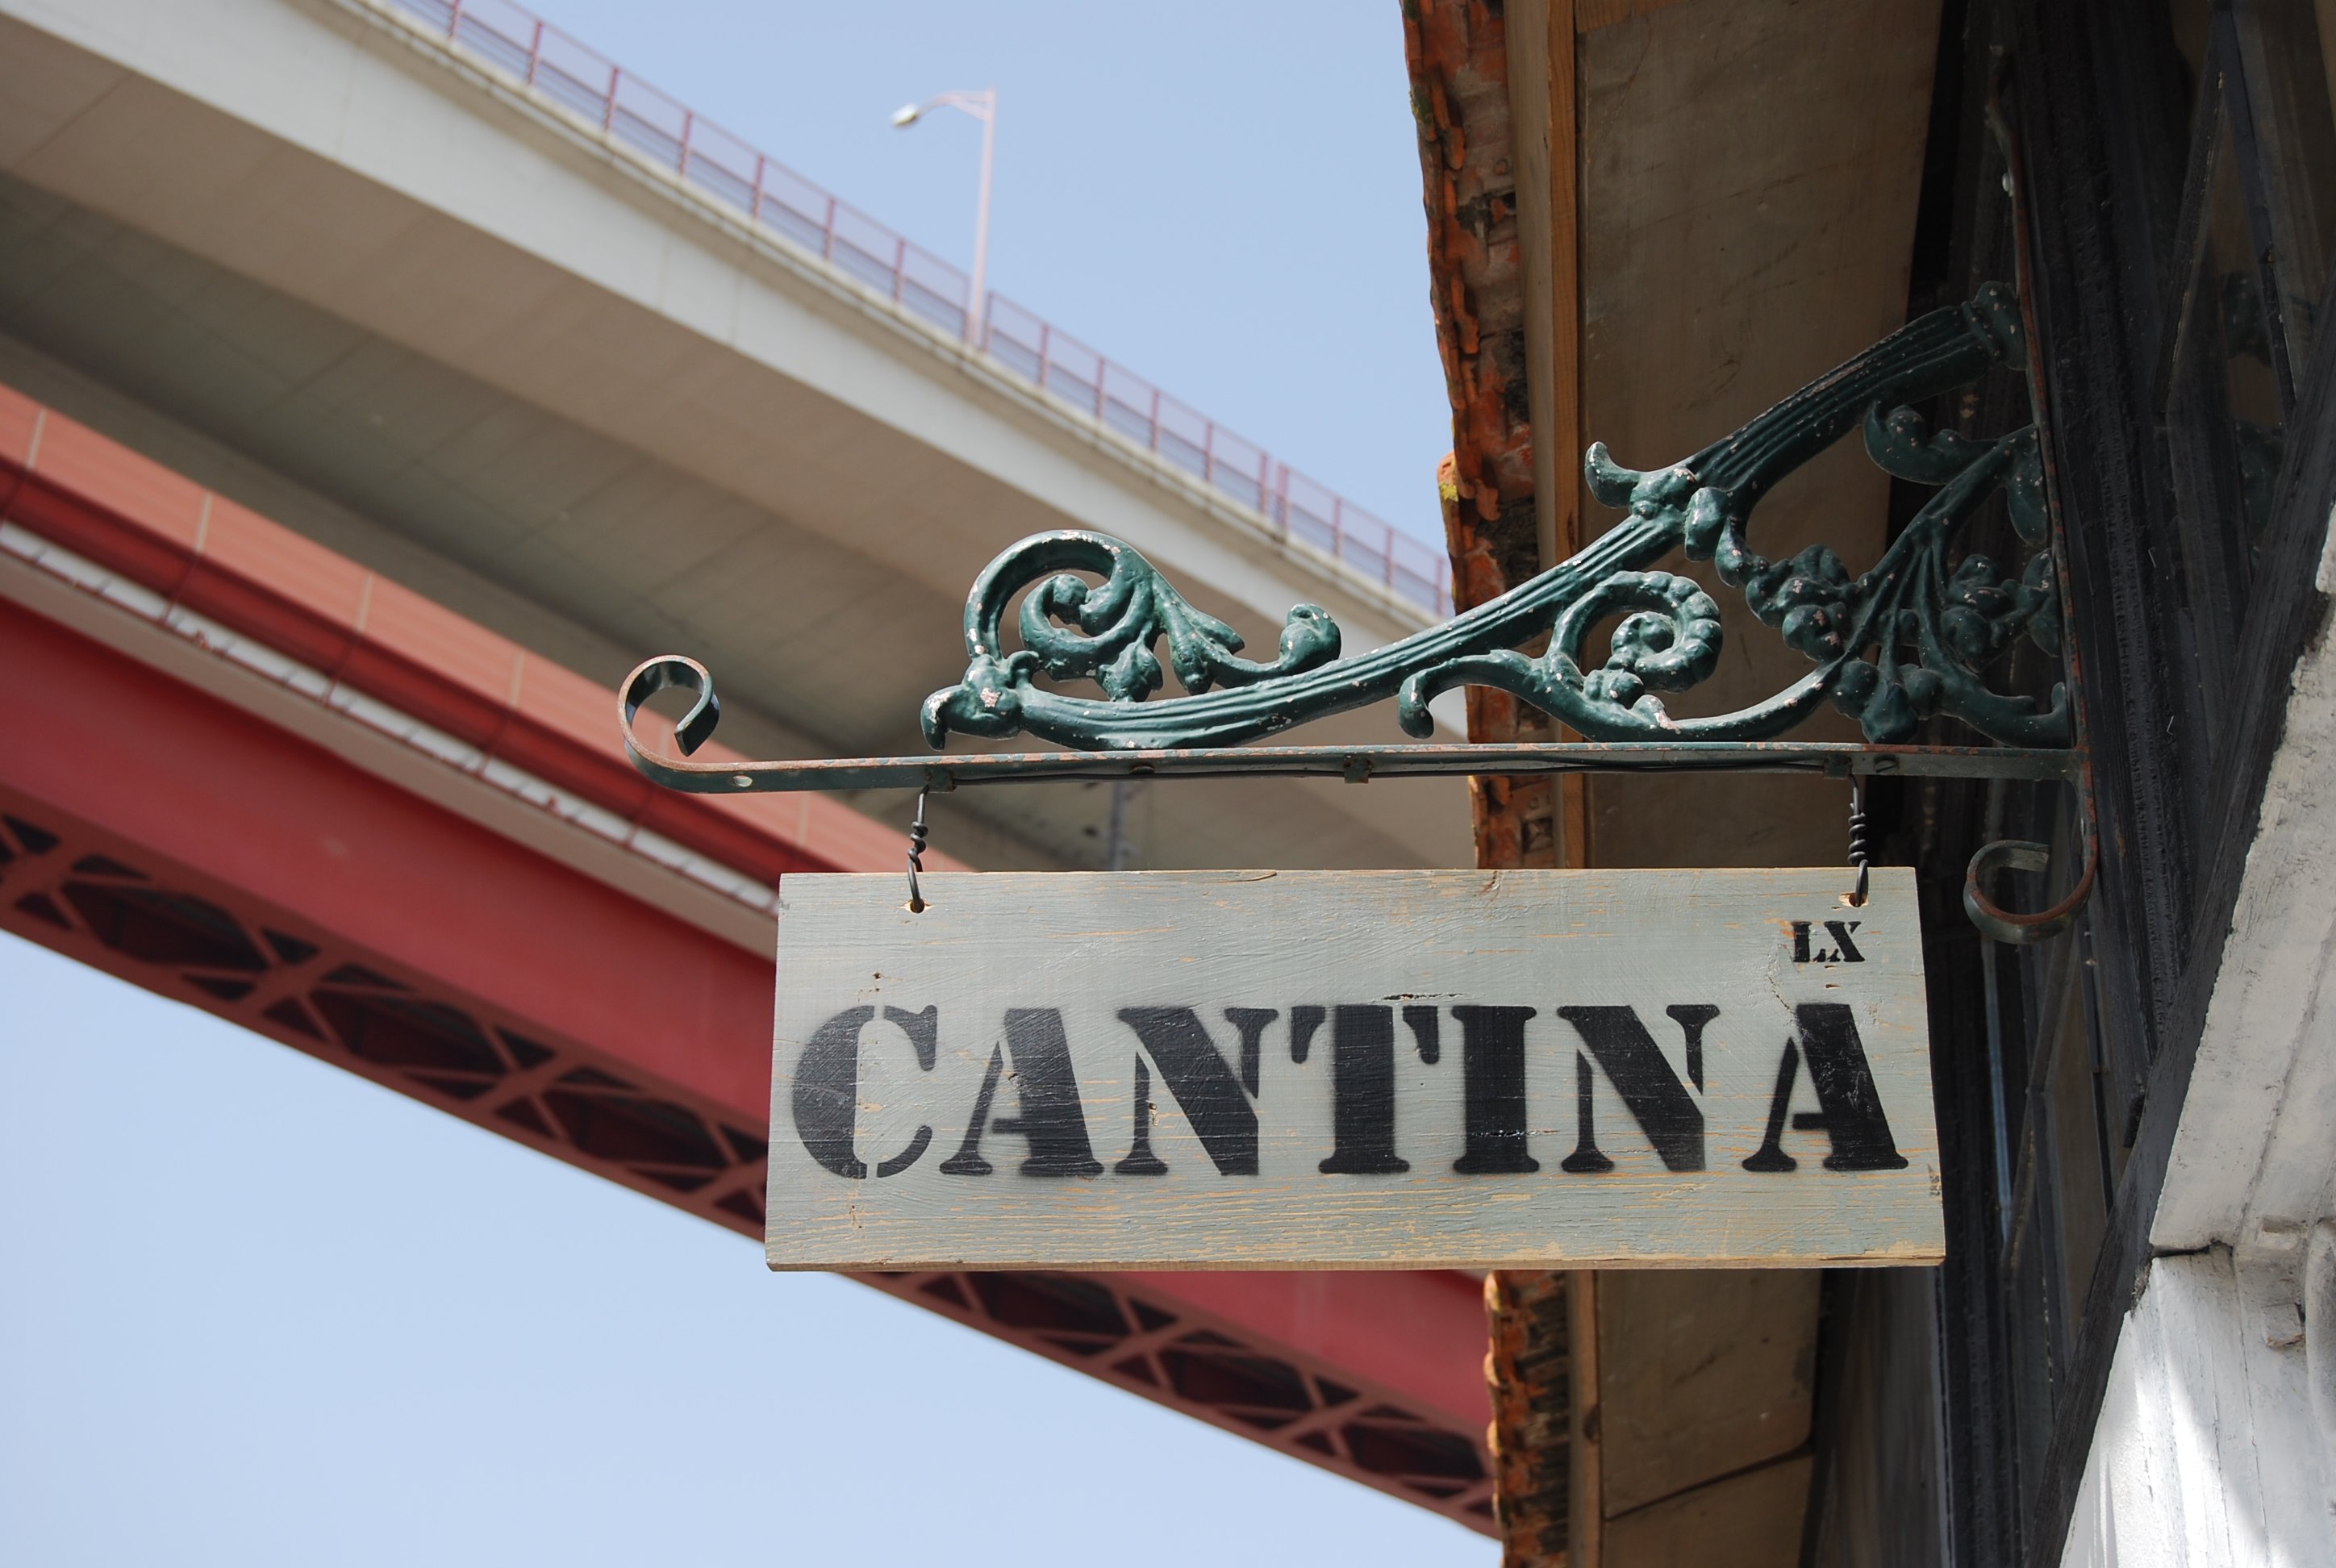 Cantina LX